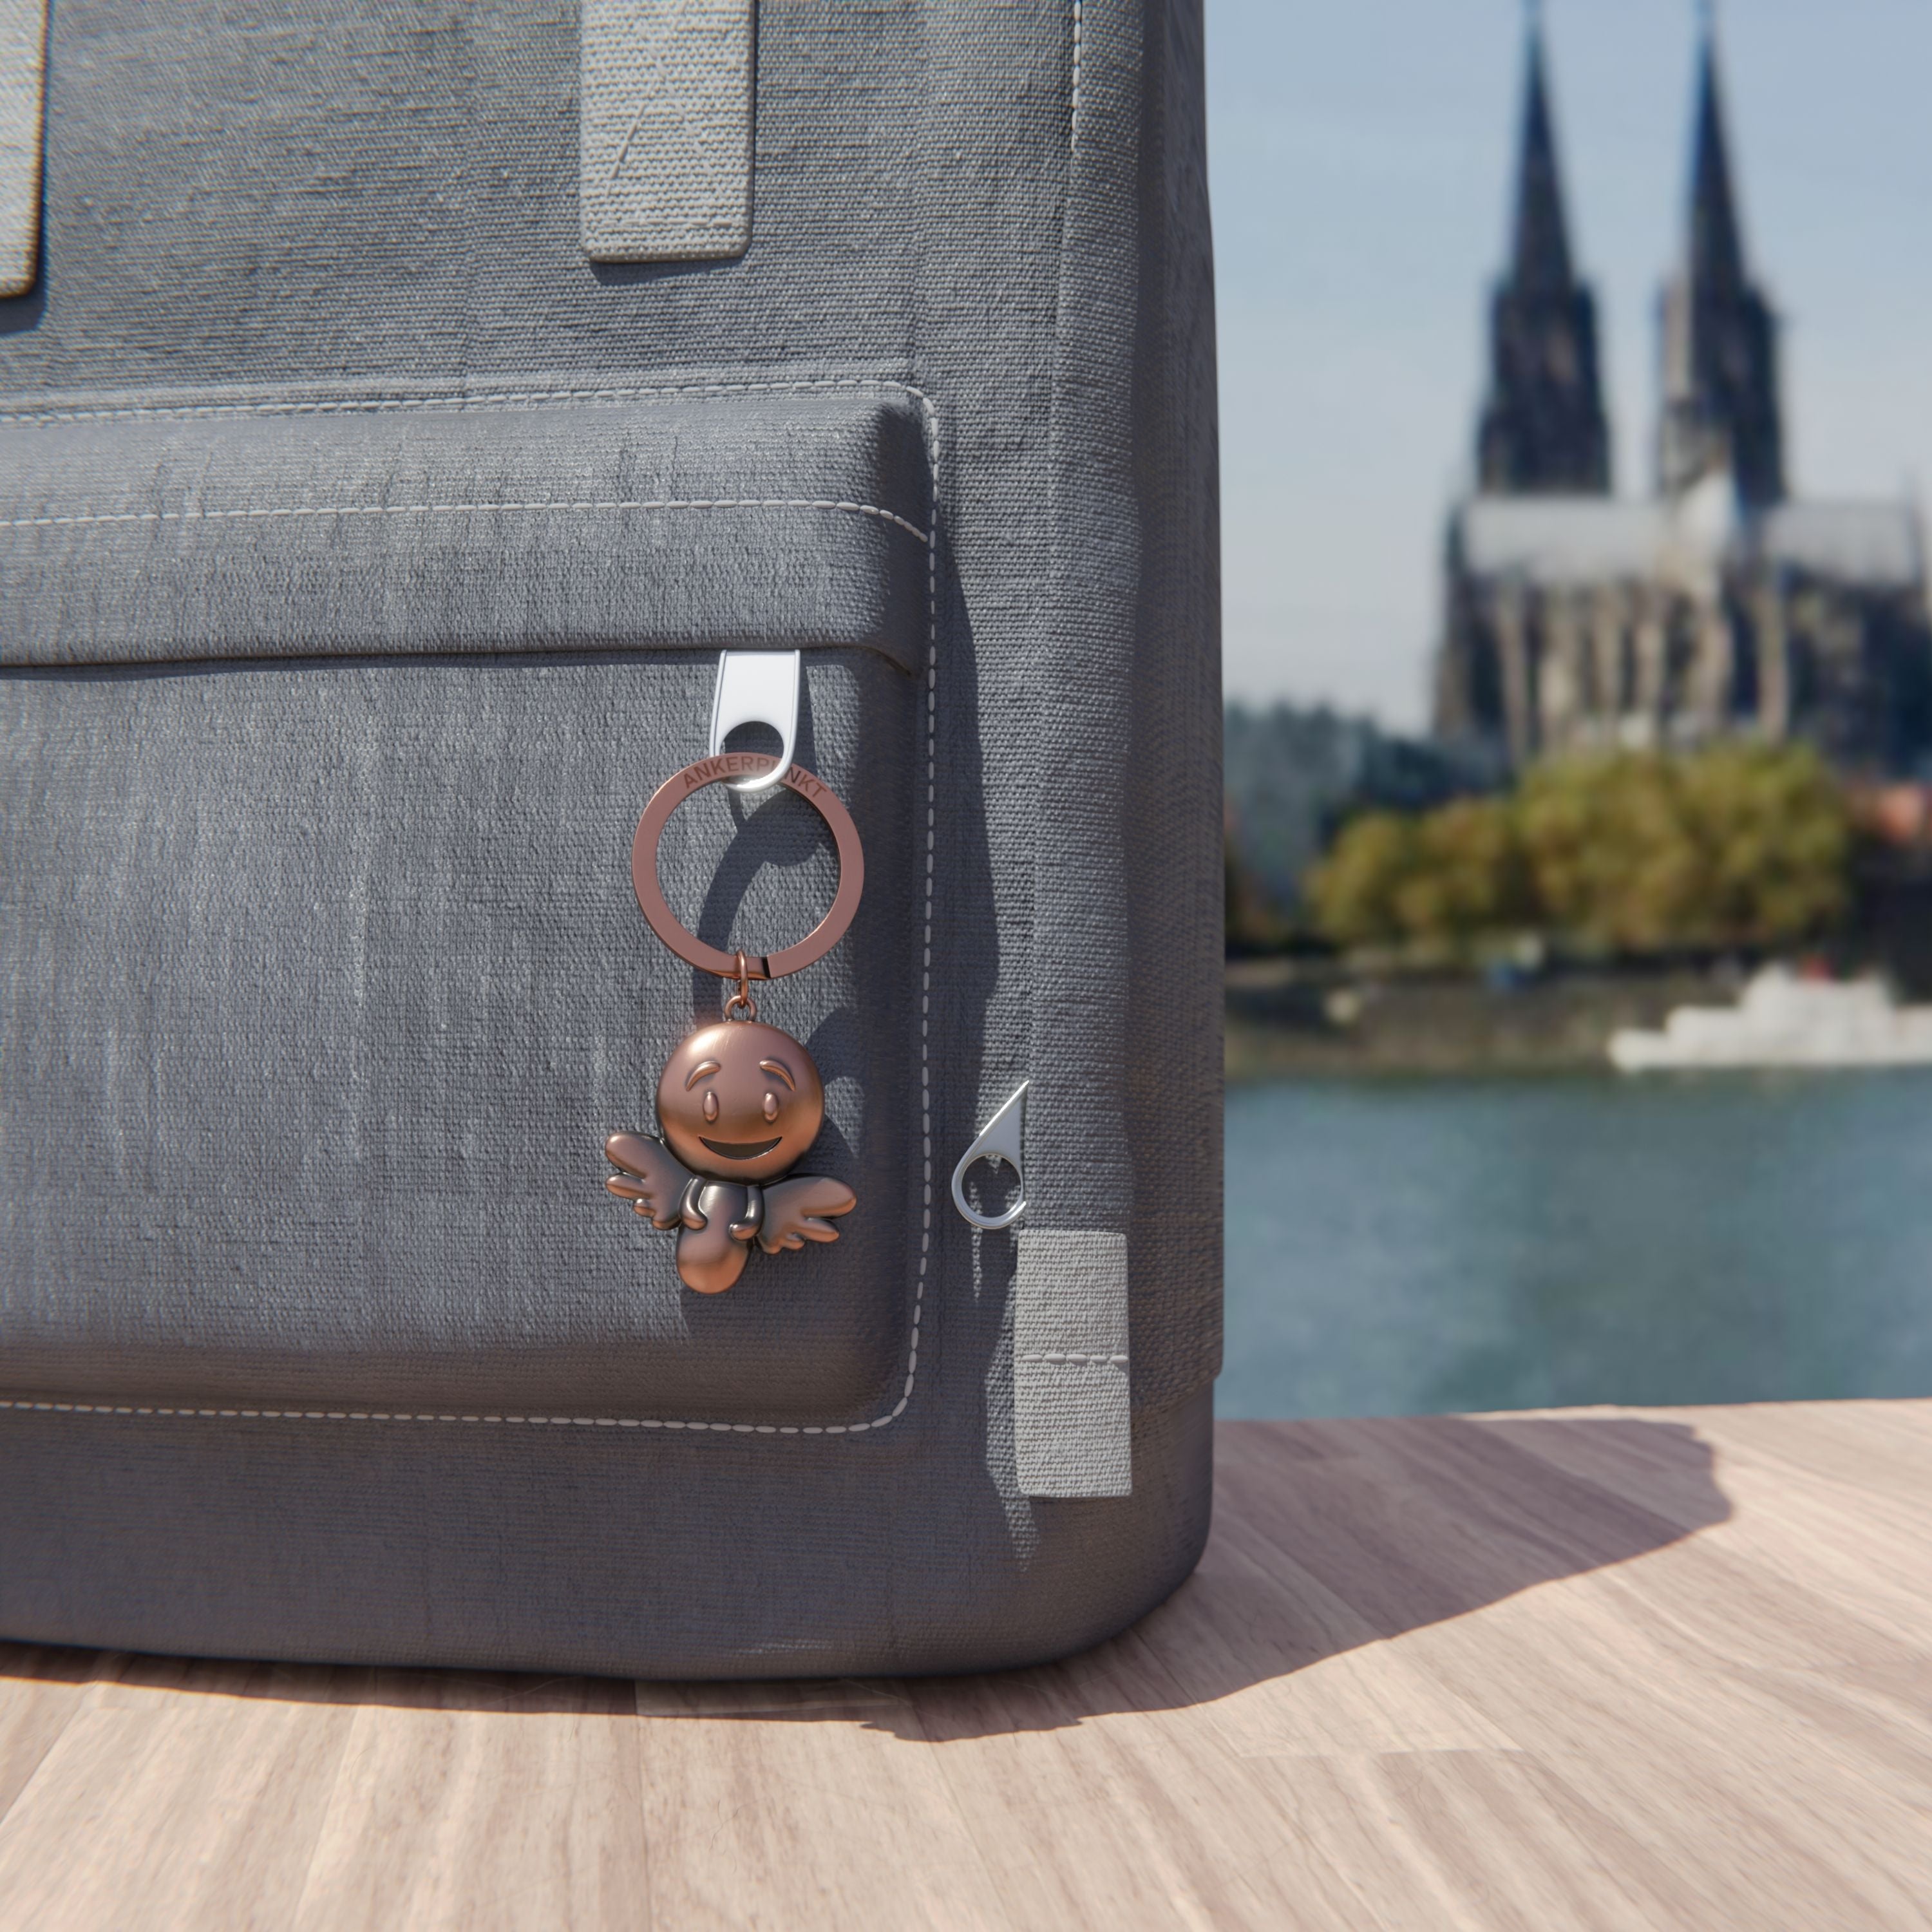 Schlüsselanhänger Engel bronze vintage am Rucksack am Rhein, im Hintergrund ist der Kölner Dom zu sehen